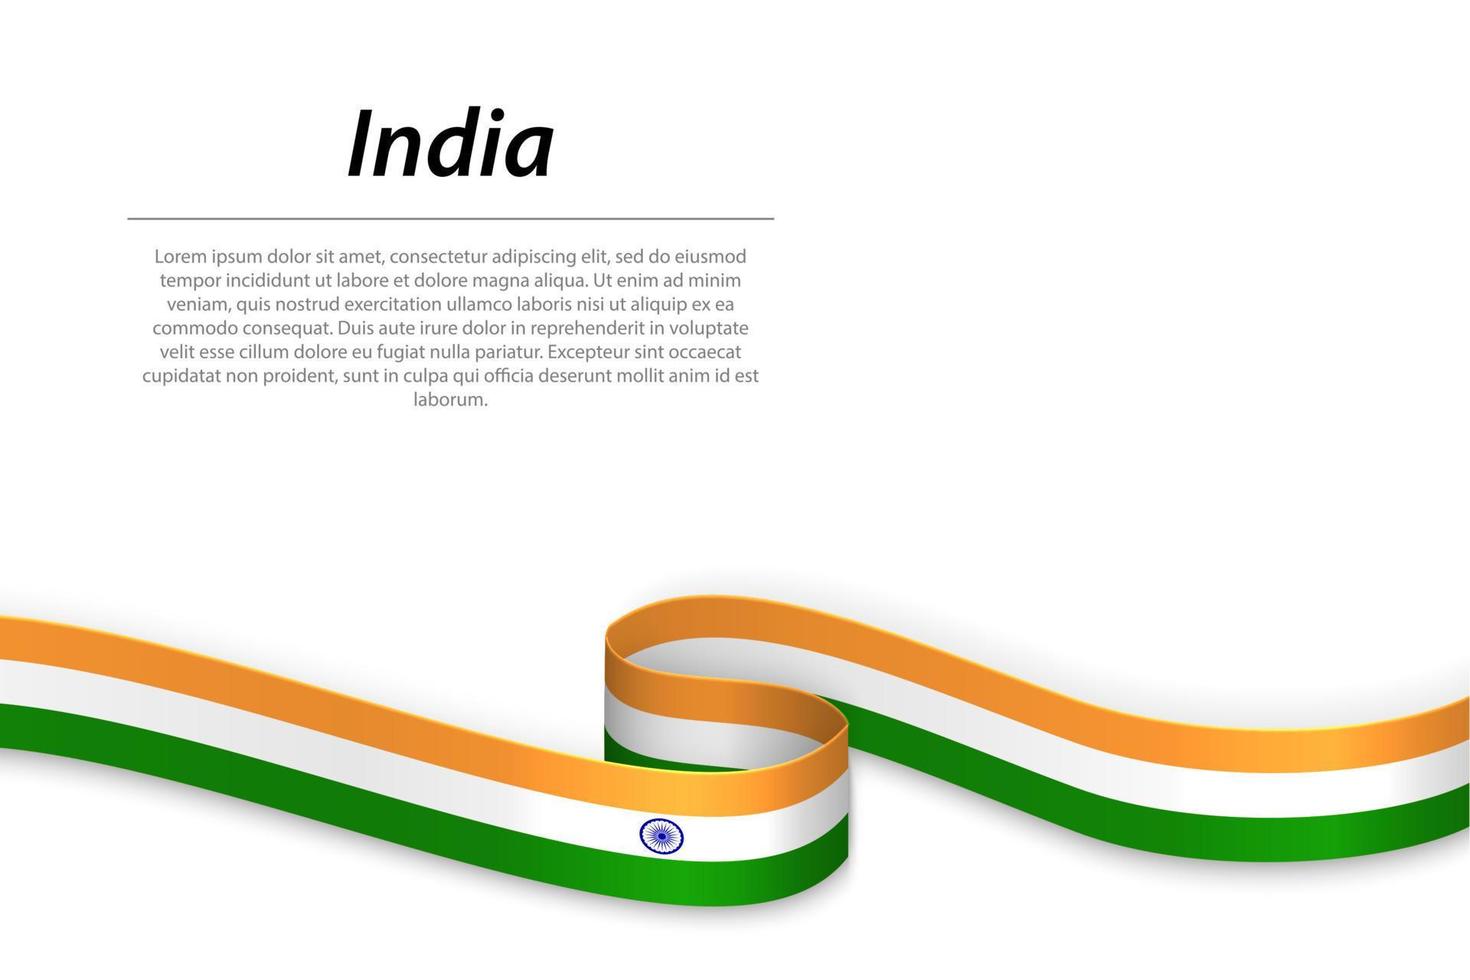 schwenkendes band oder banner mit indischer flagge vektor